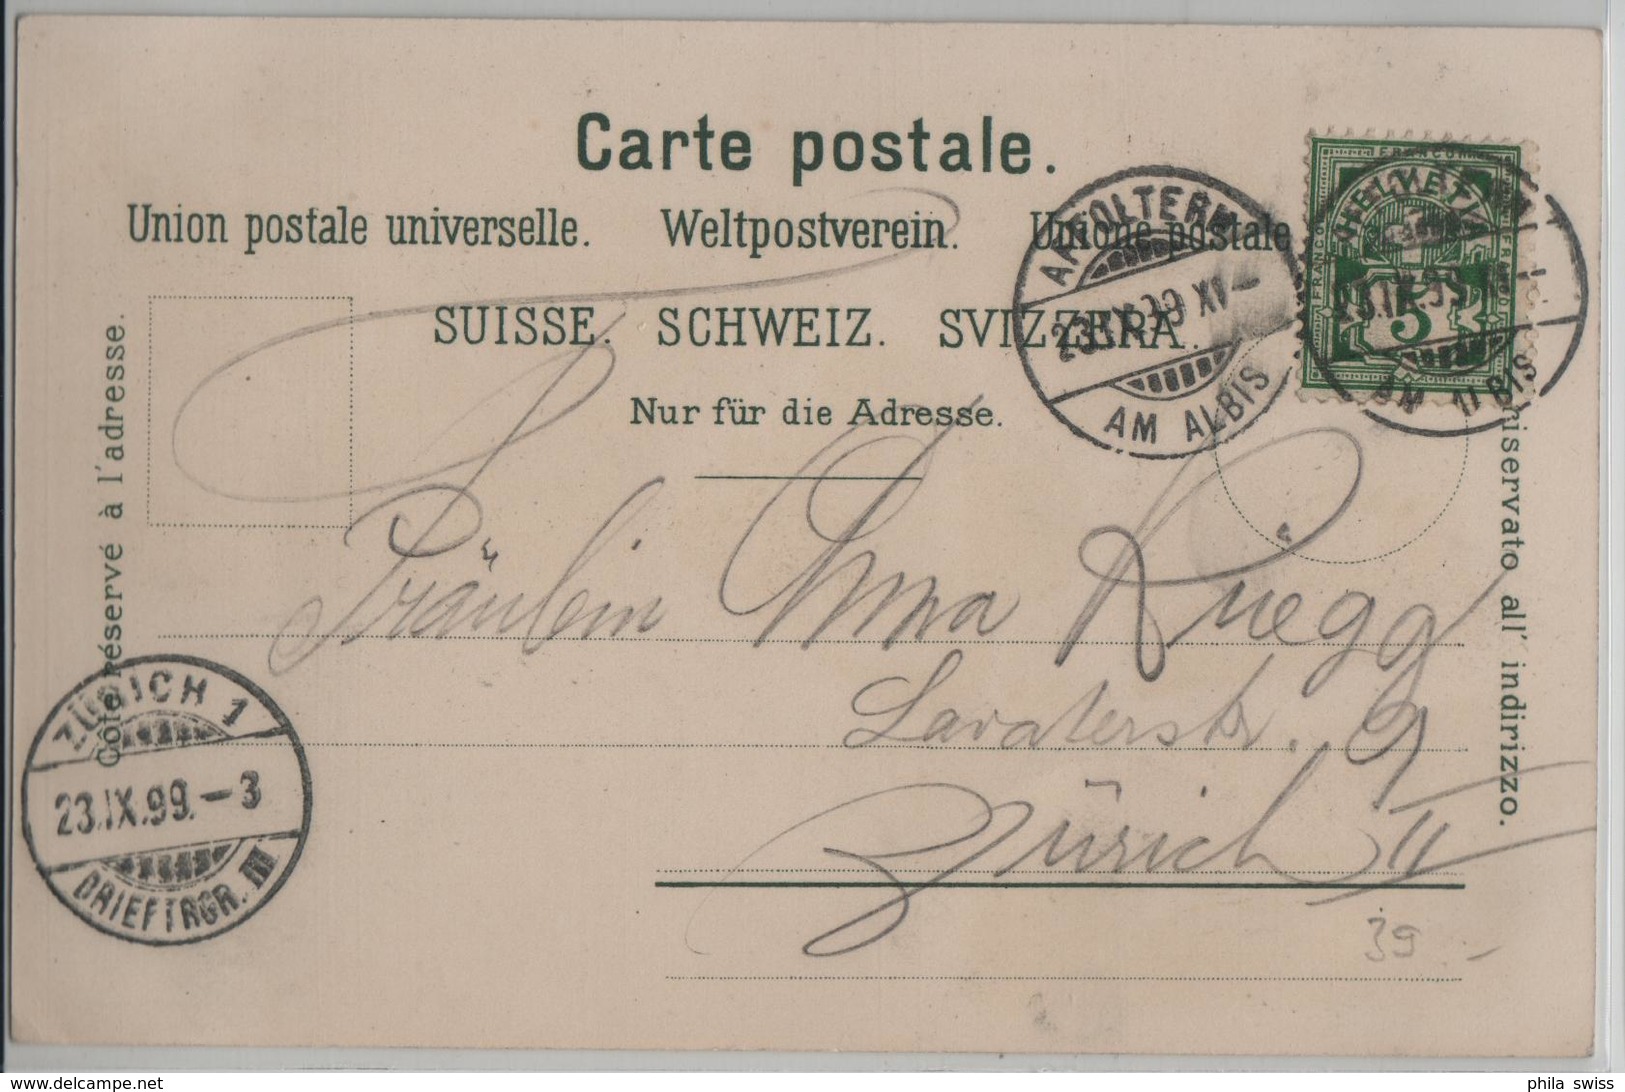 Gruss Aus Baar - Bahnhof, Spinnerei, Kirche, Cartonfabrik, Tropfsteingrotte - Litho Carl Künzli No. 2596 - Baar